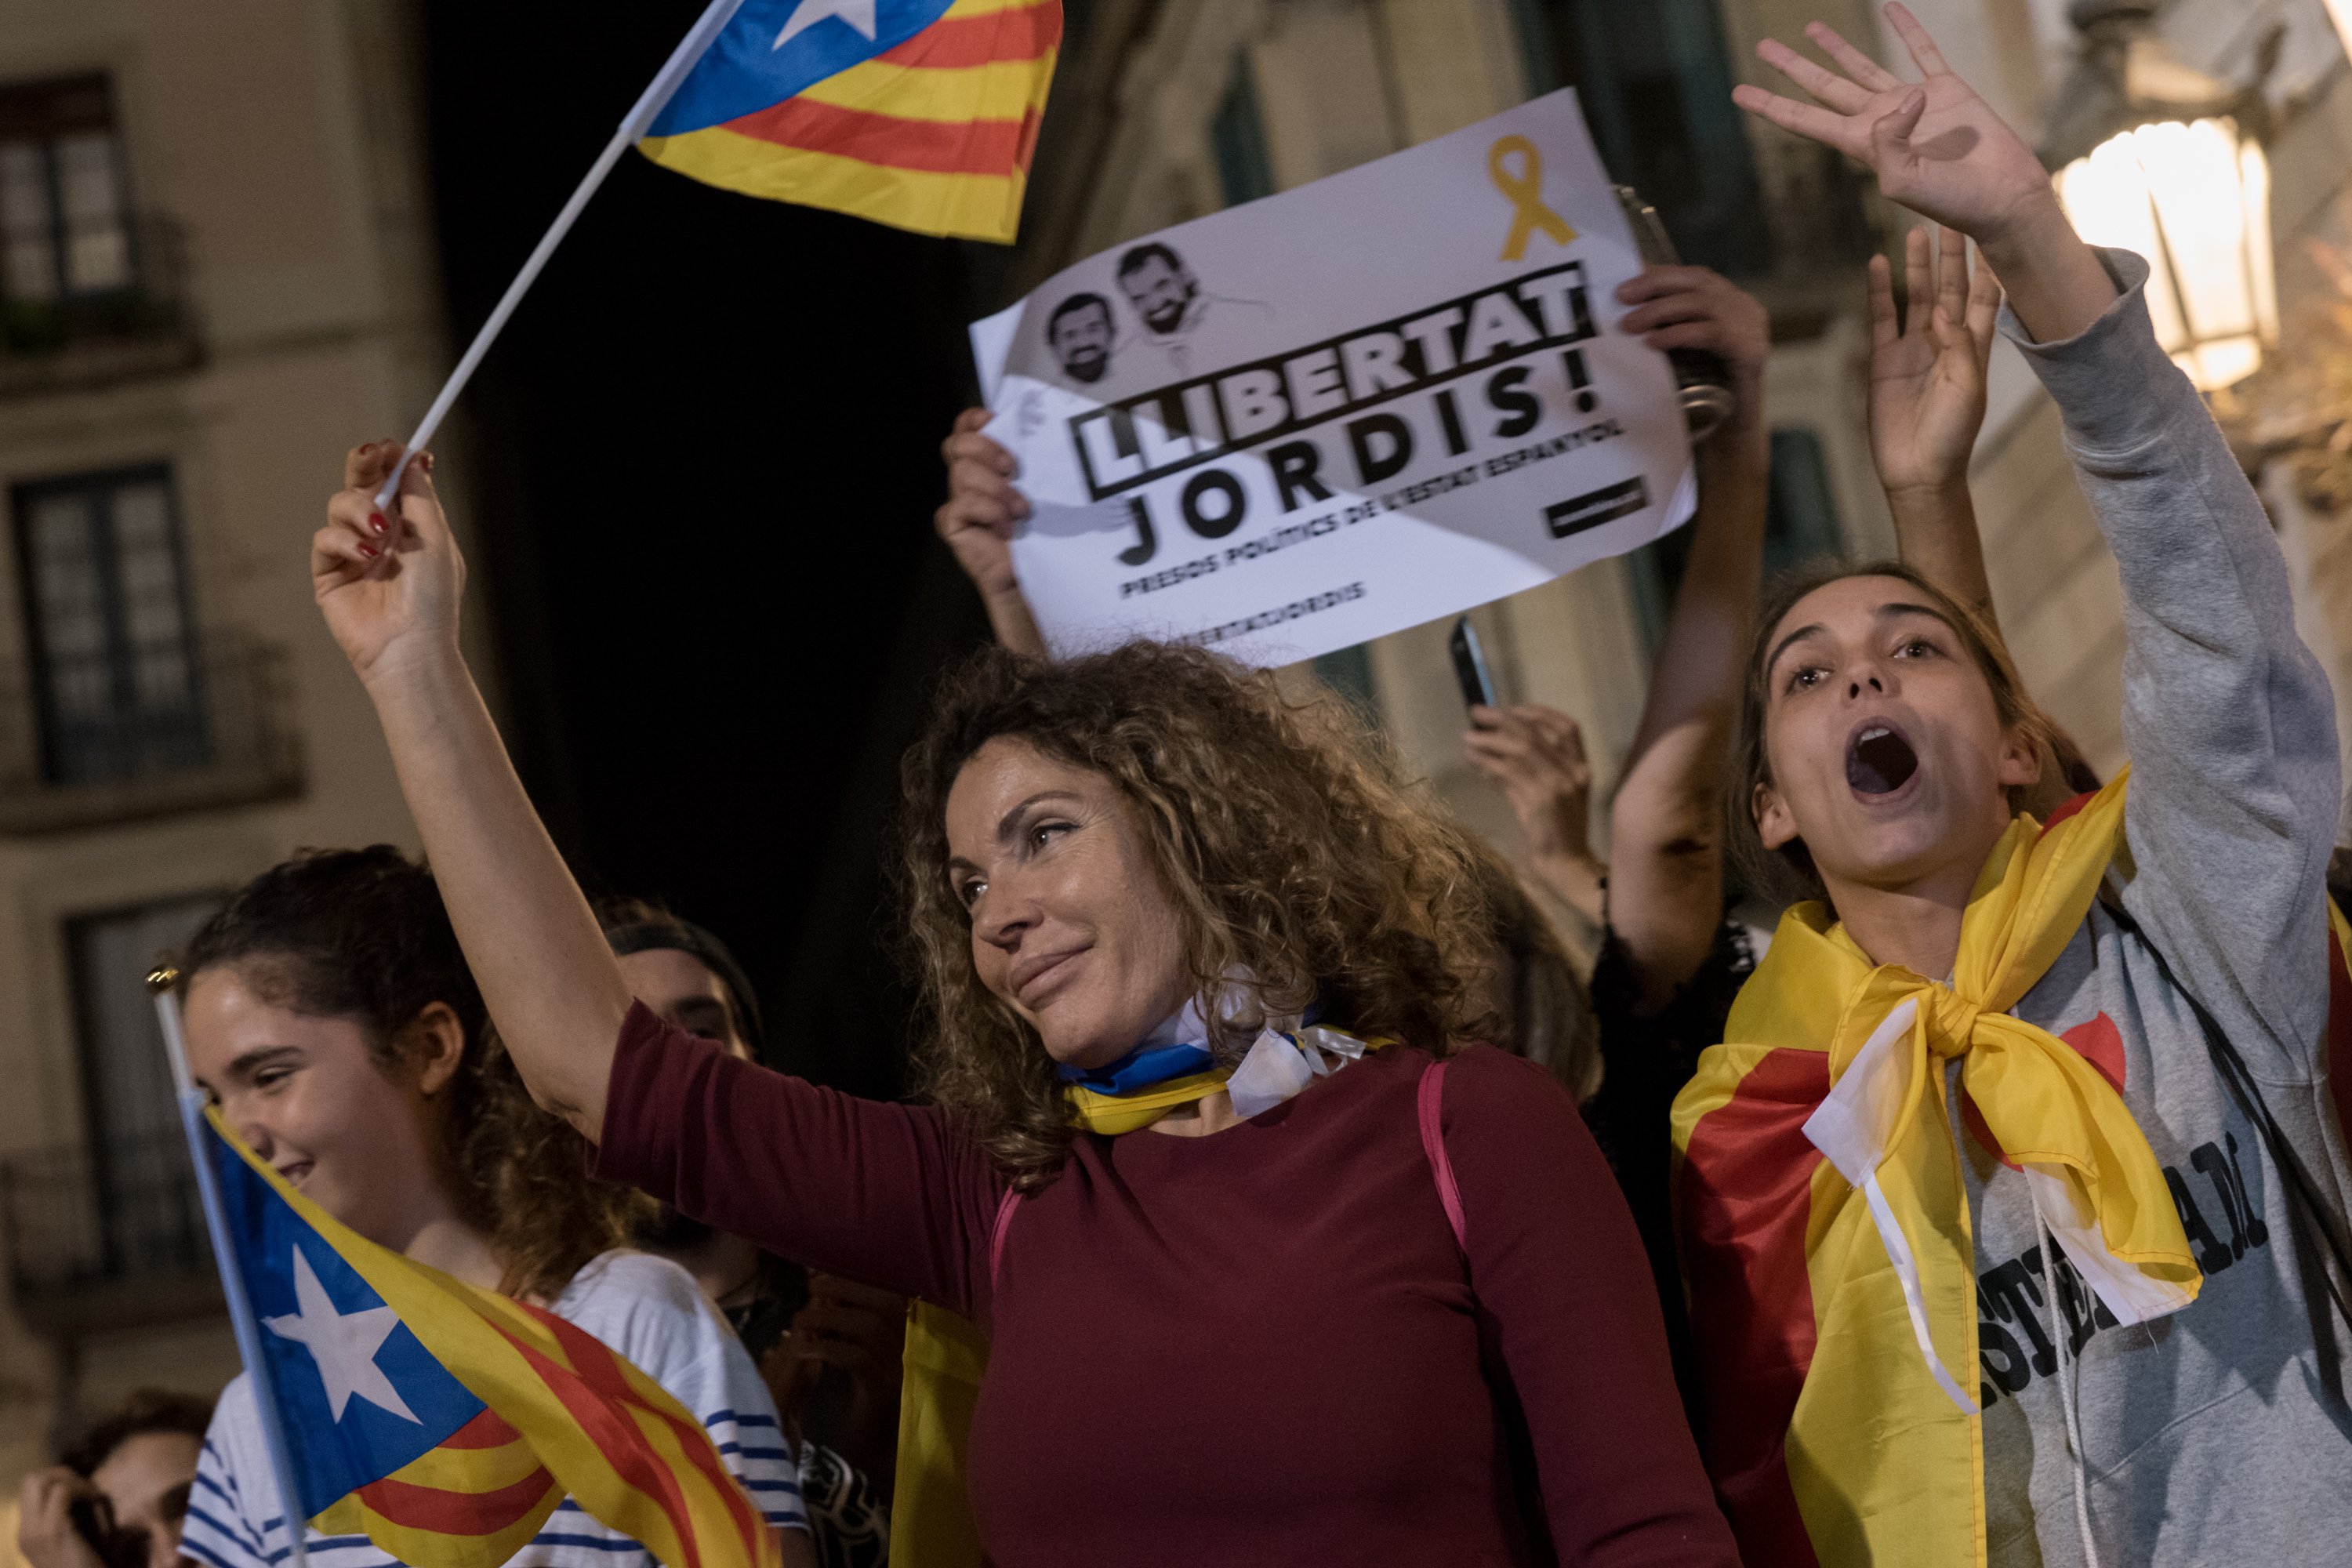 El manifiesto que pide la libertad de los Jordis: "Los queremos en la calle y entre nosotros"